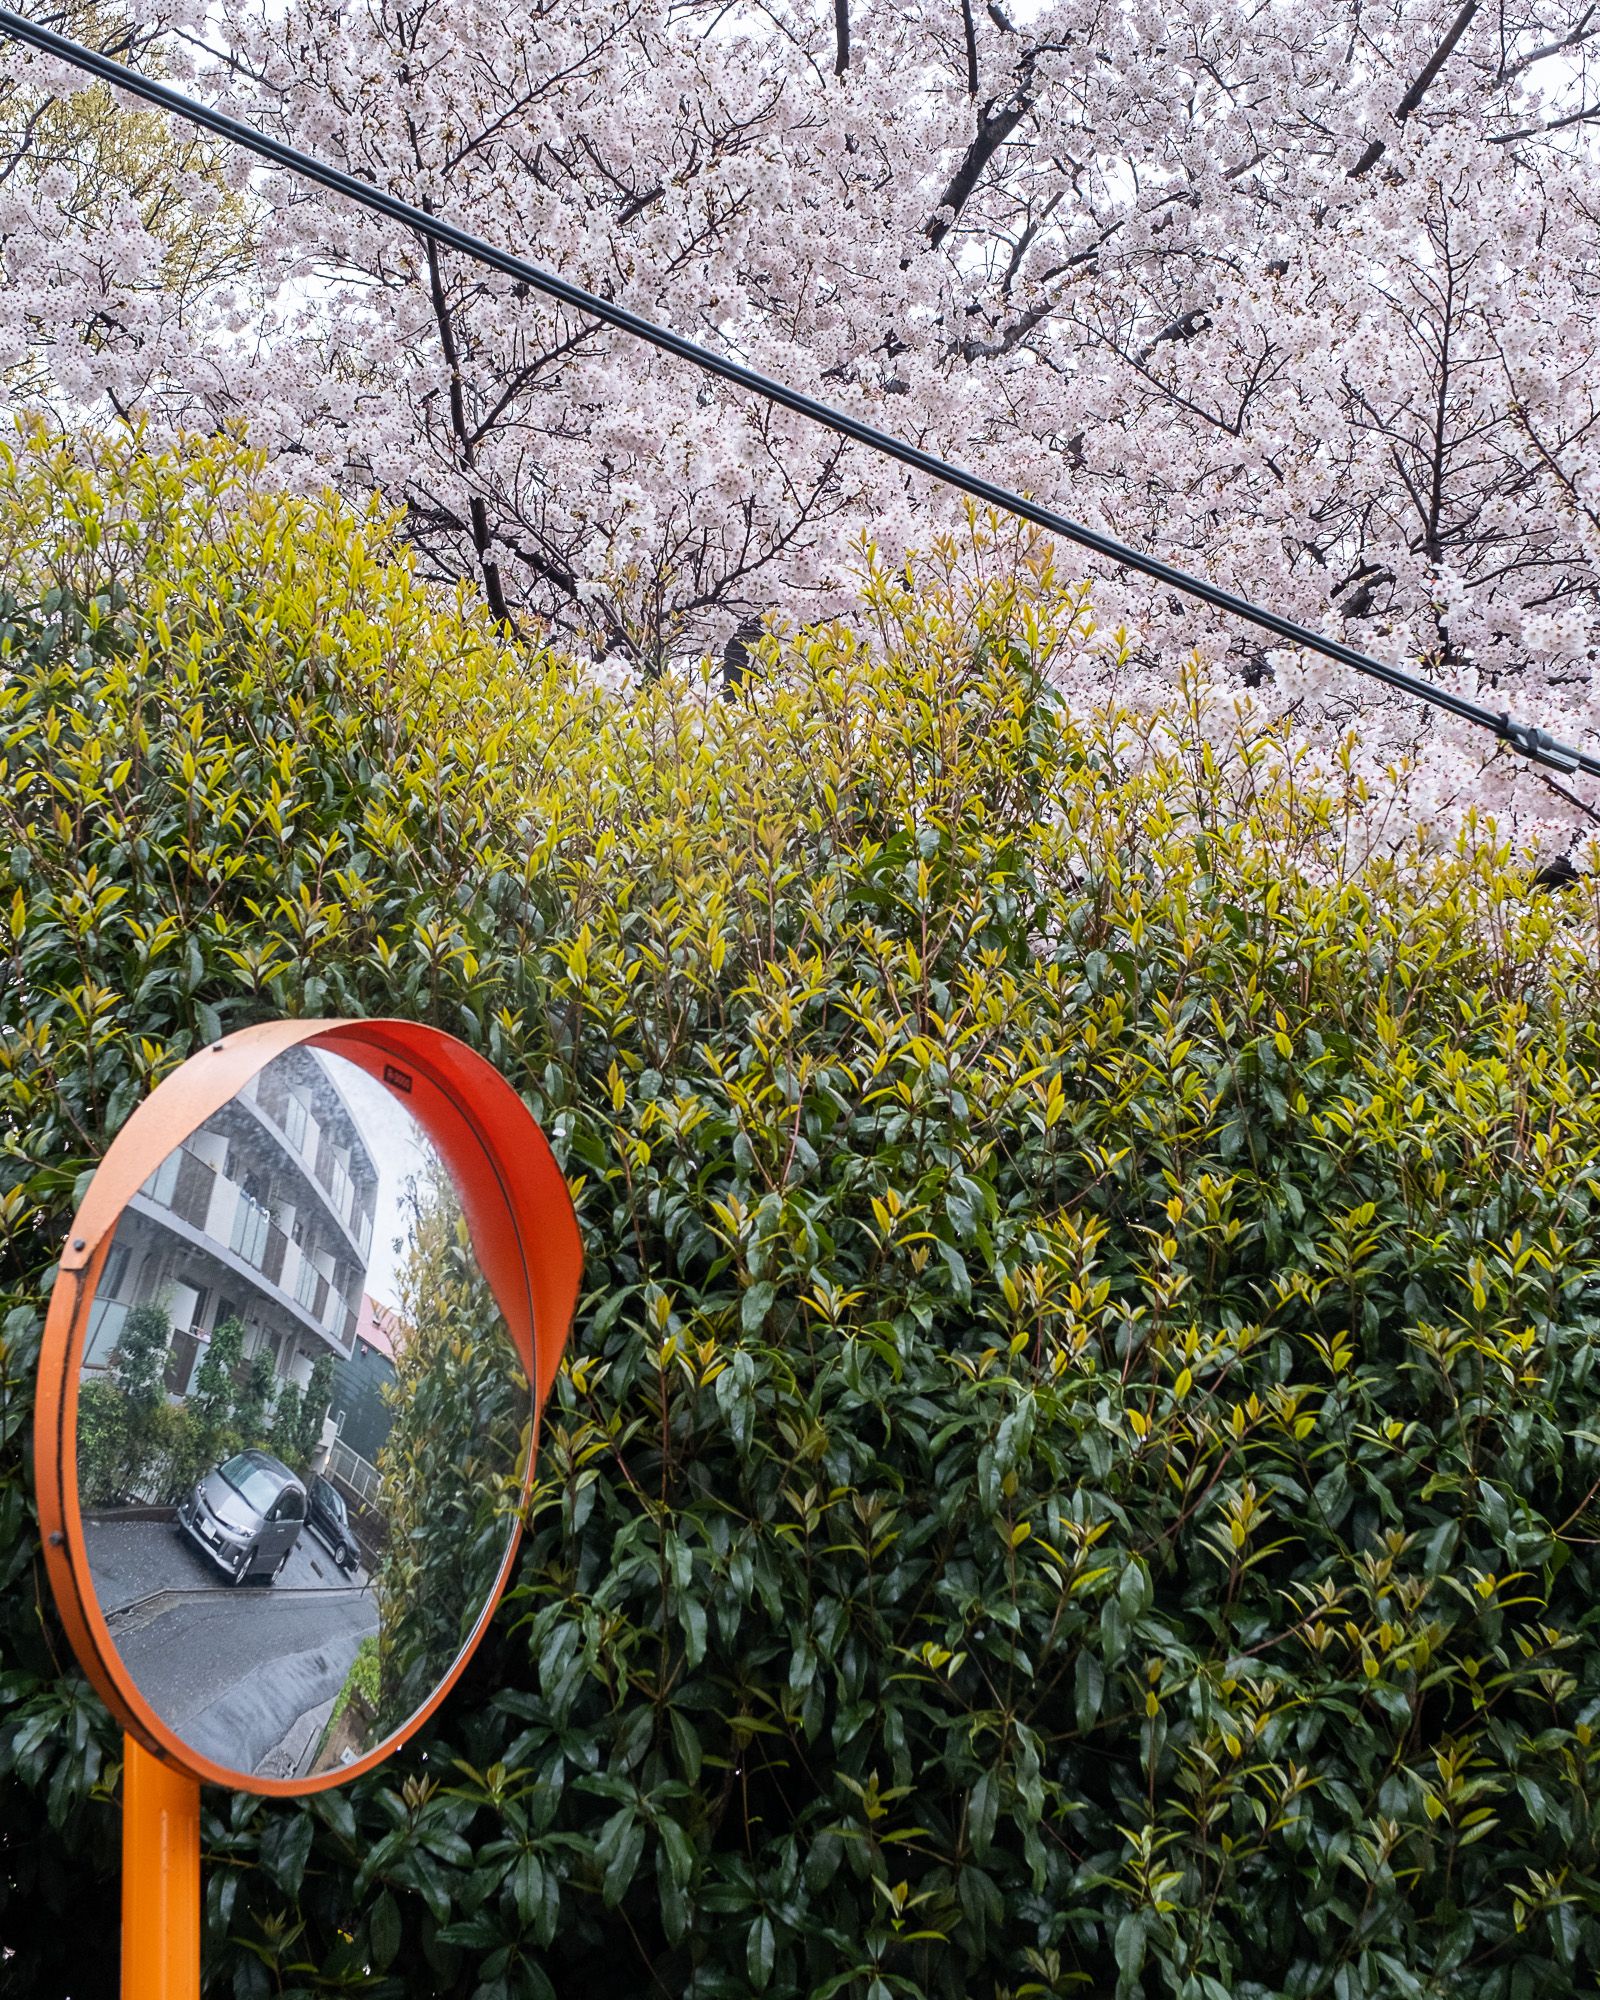 Rainy sakura and long walks